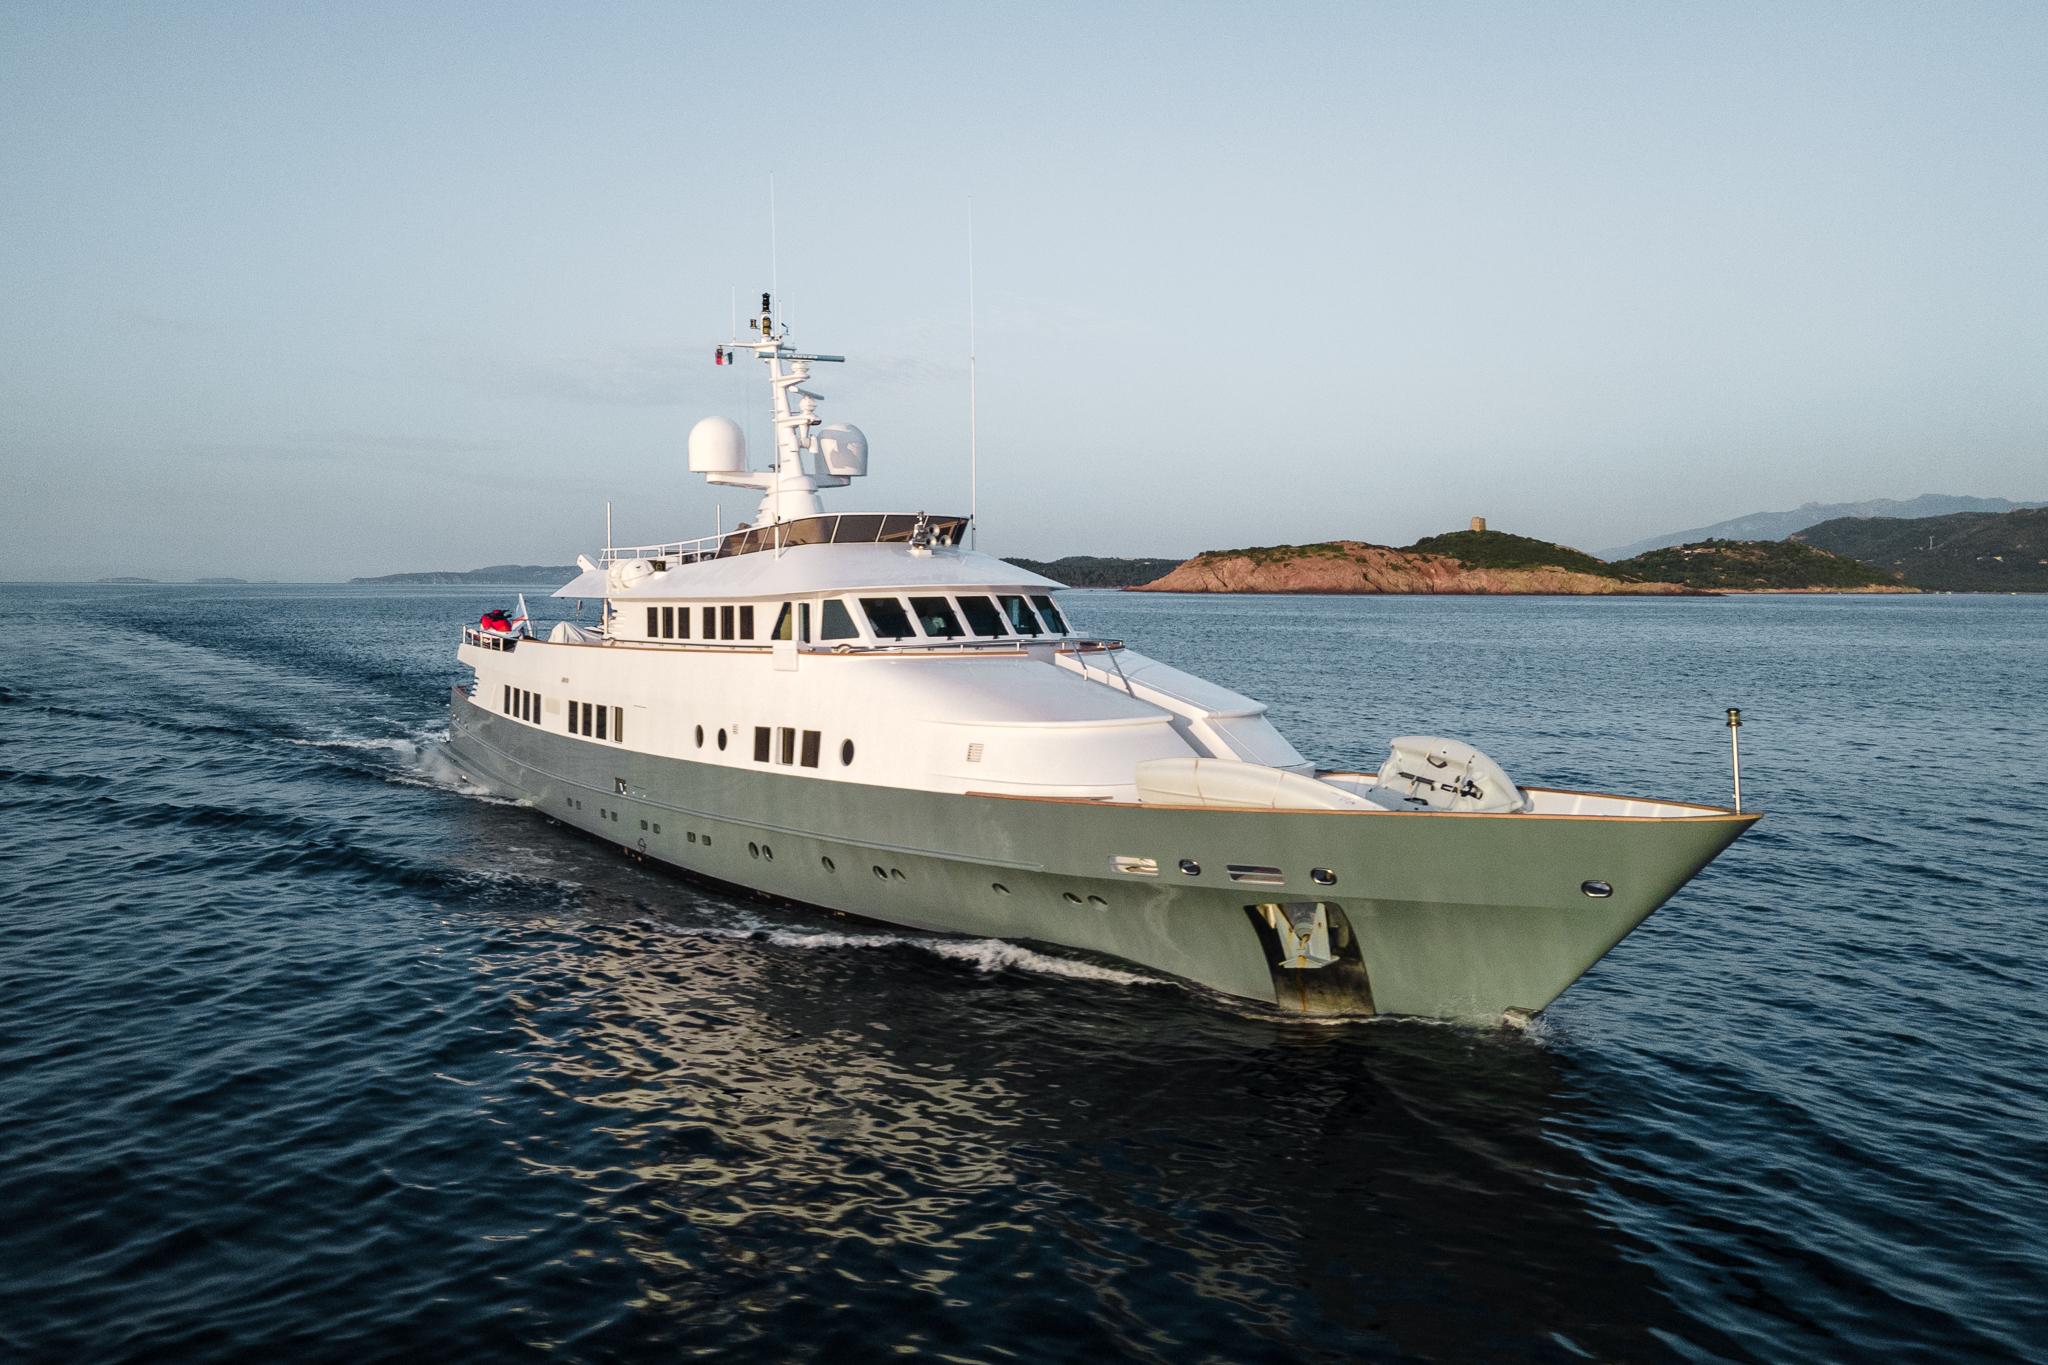 berzinc yacht for sale 147 camper & nicholsons yachts toulon, france denison yacht sales